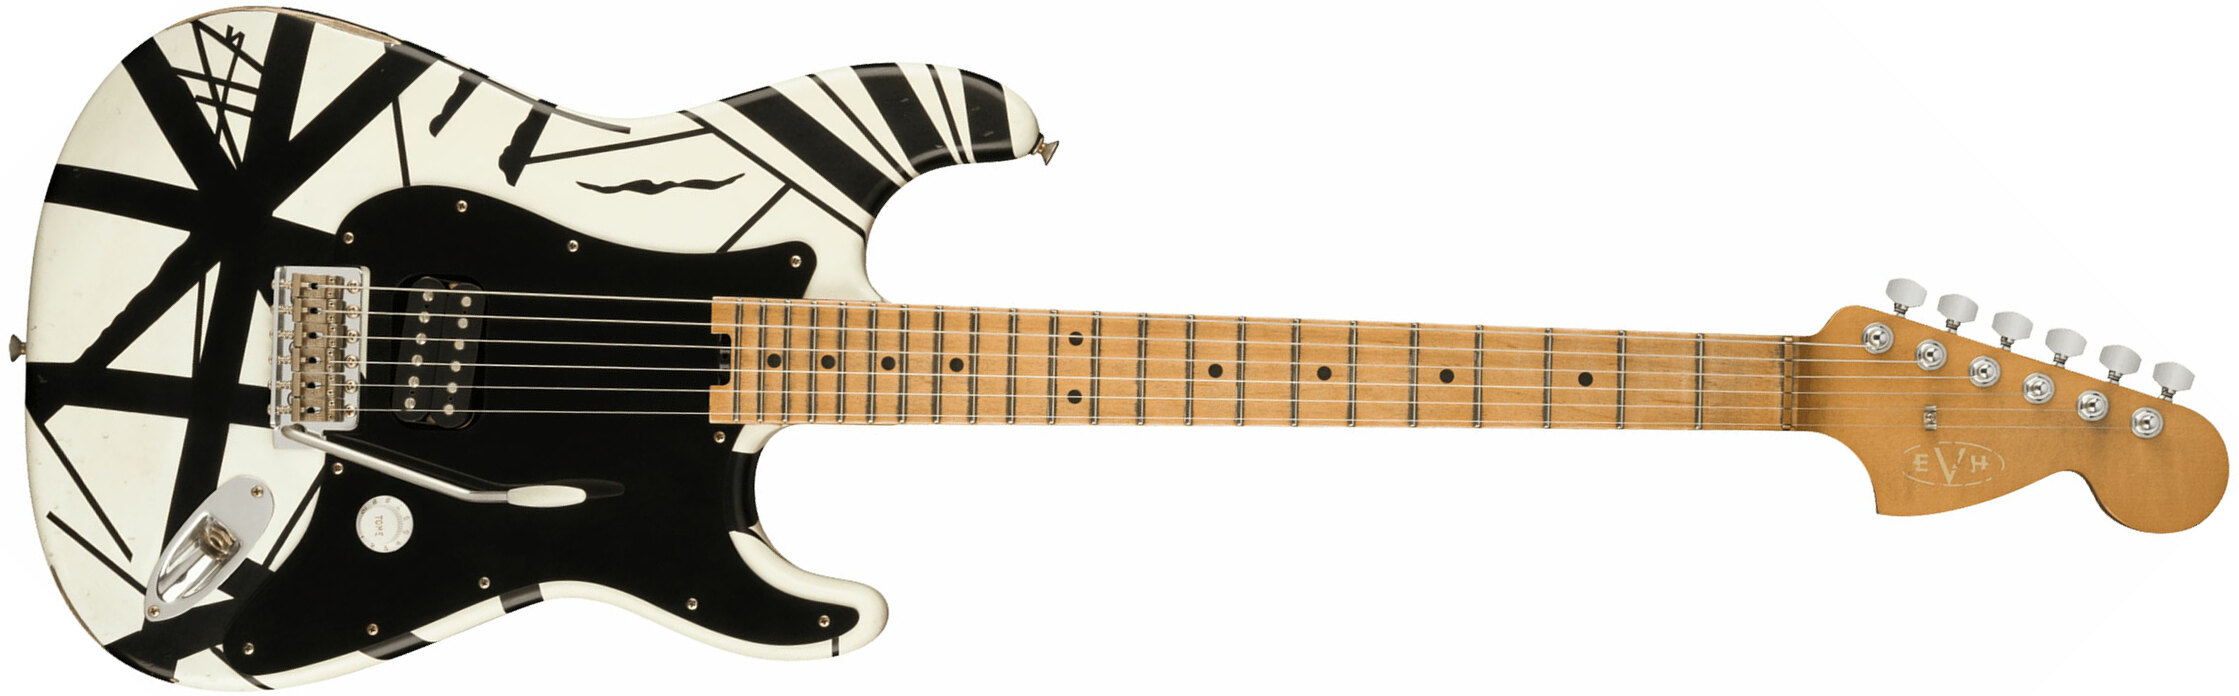 Evh '78 Eruption Striped Series Mex H Trem Mn - White With Black Stripes Relic - Elektrische gitaar in Str-vorm - Main picture